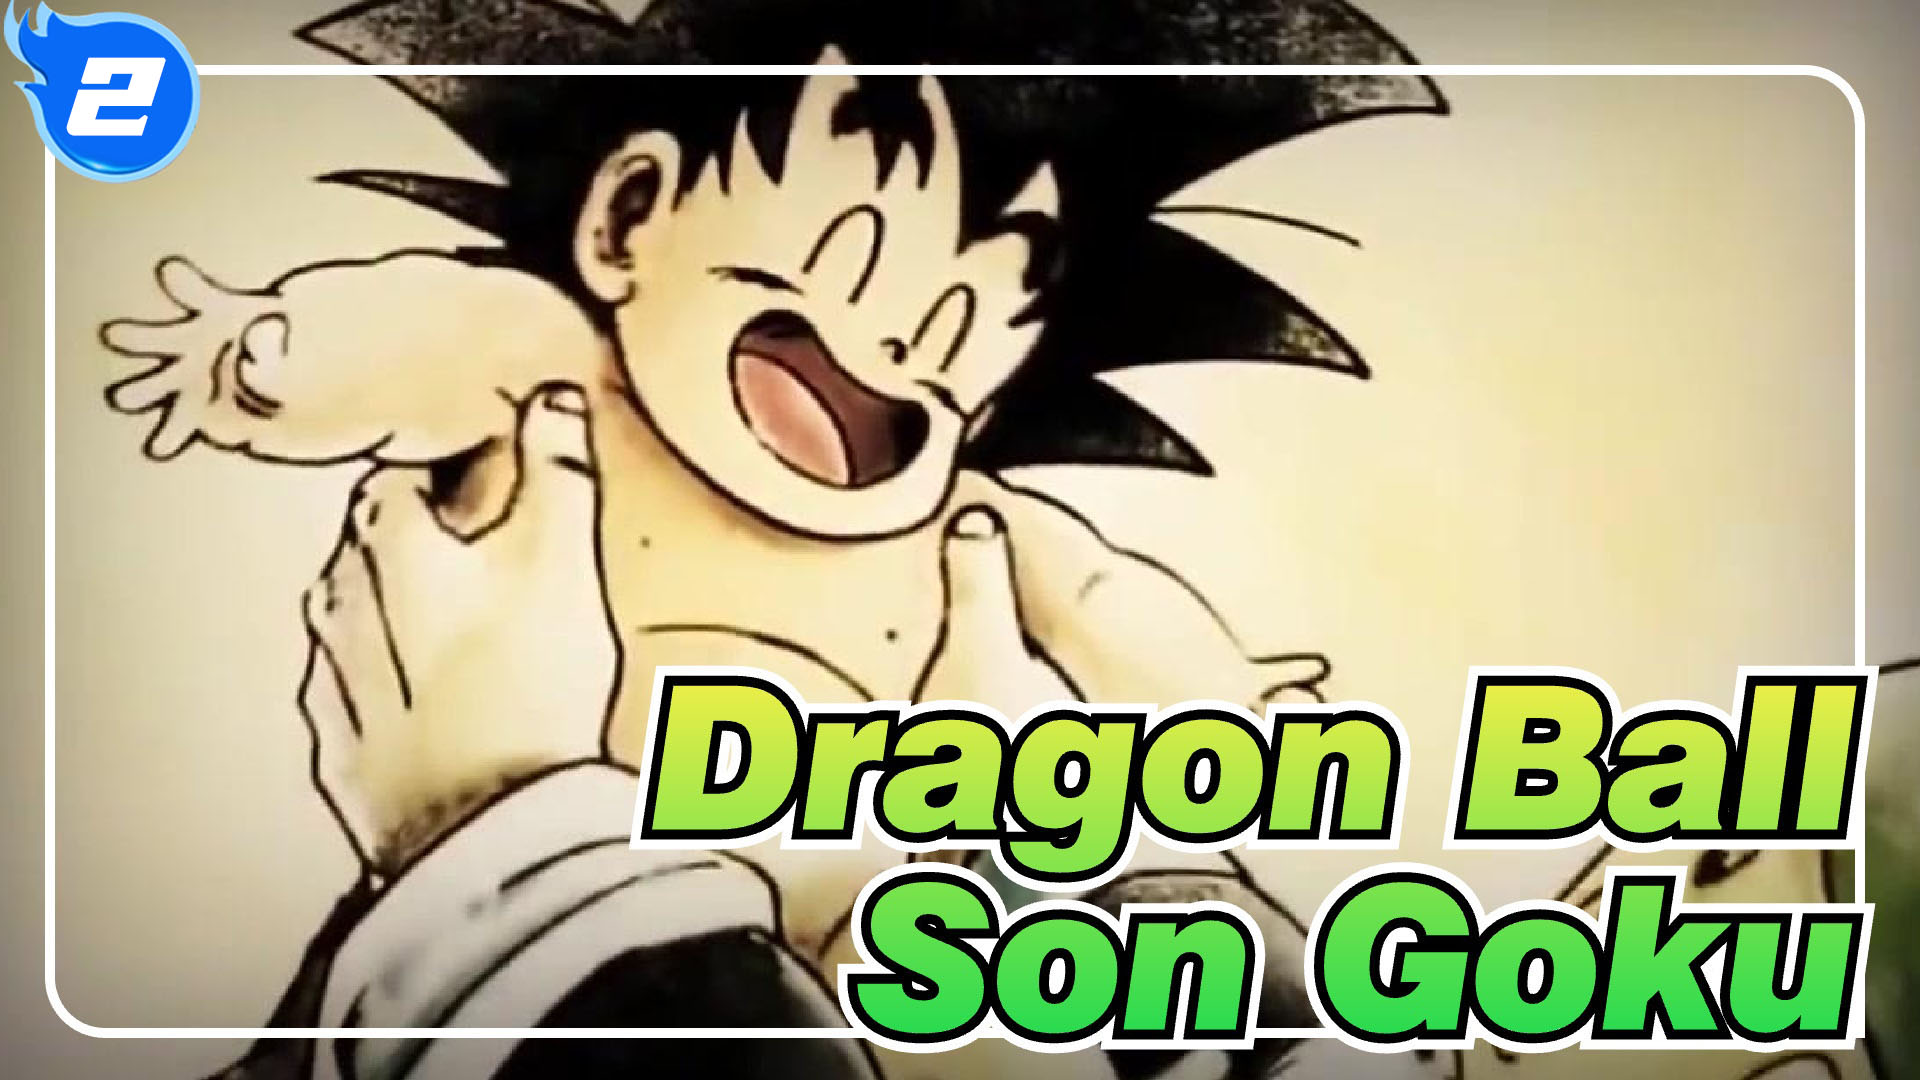 Dragon Ball|AMV]Emotional BGM, the story of Son Goku and Dragon Ball_2 -  Bilibili